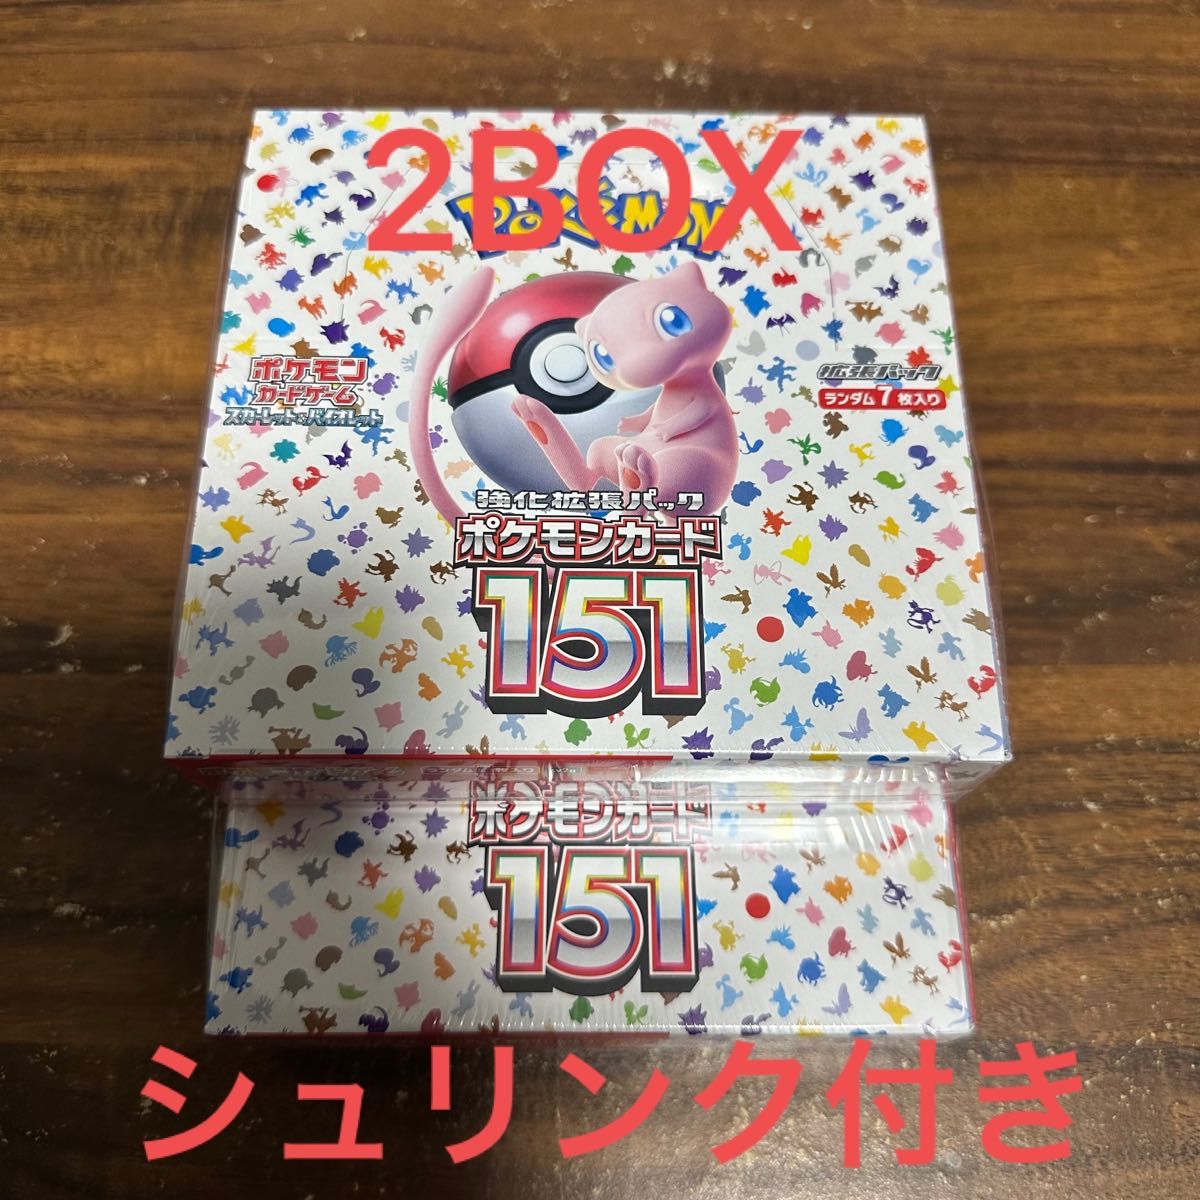 ポケモンカードゲーム 強化拡張パック 151 シュリンク付き 2BOX 